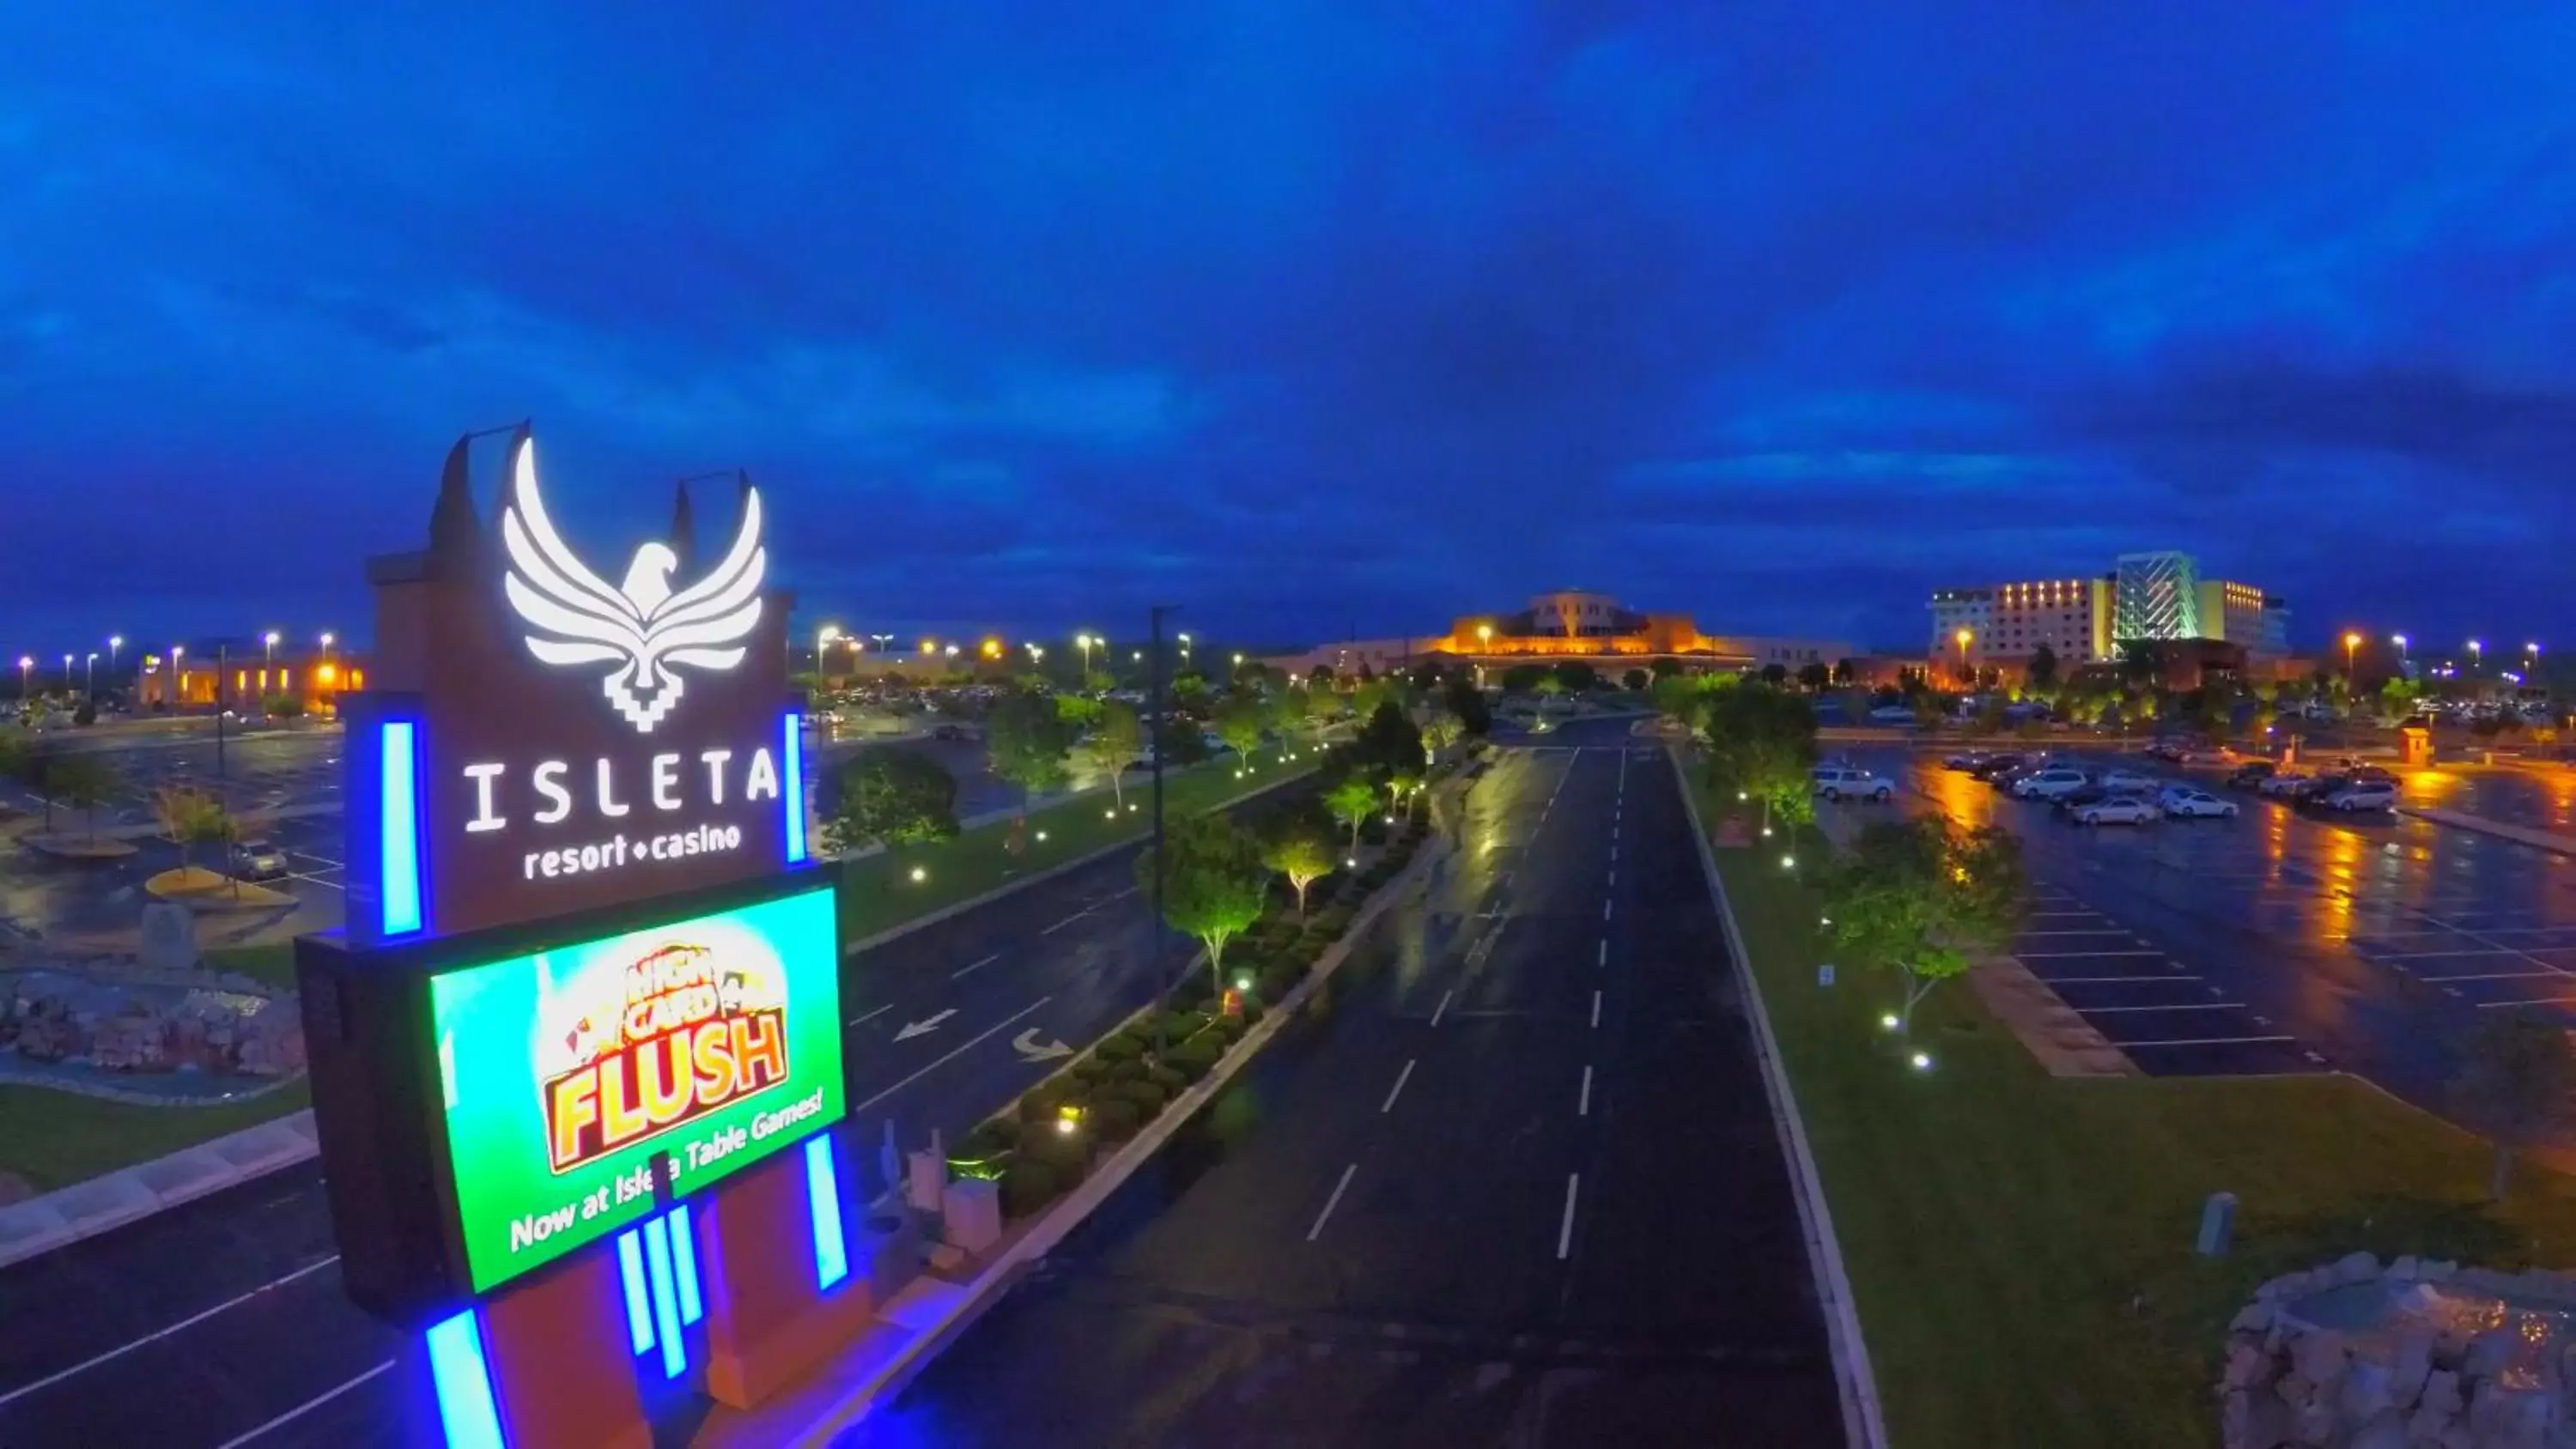 Night in Isleta Resort & Casino